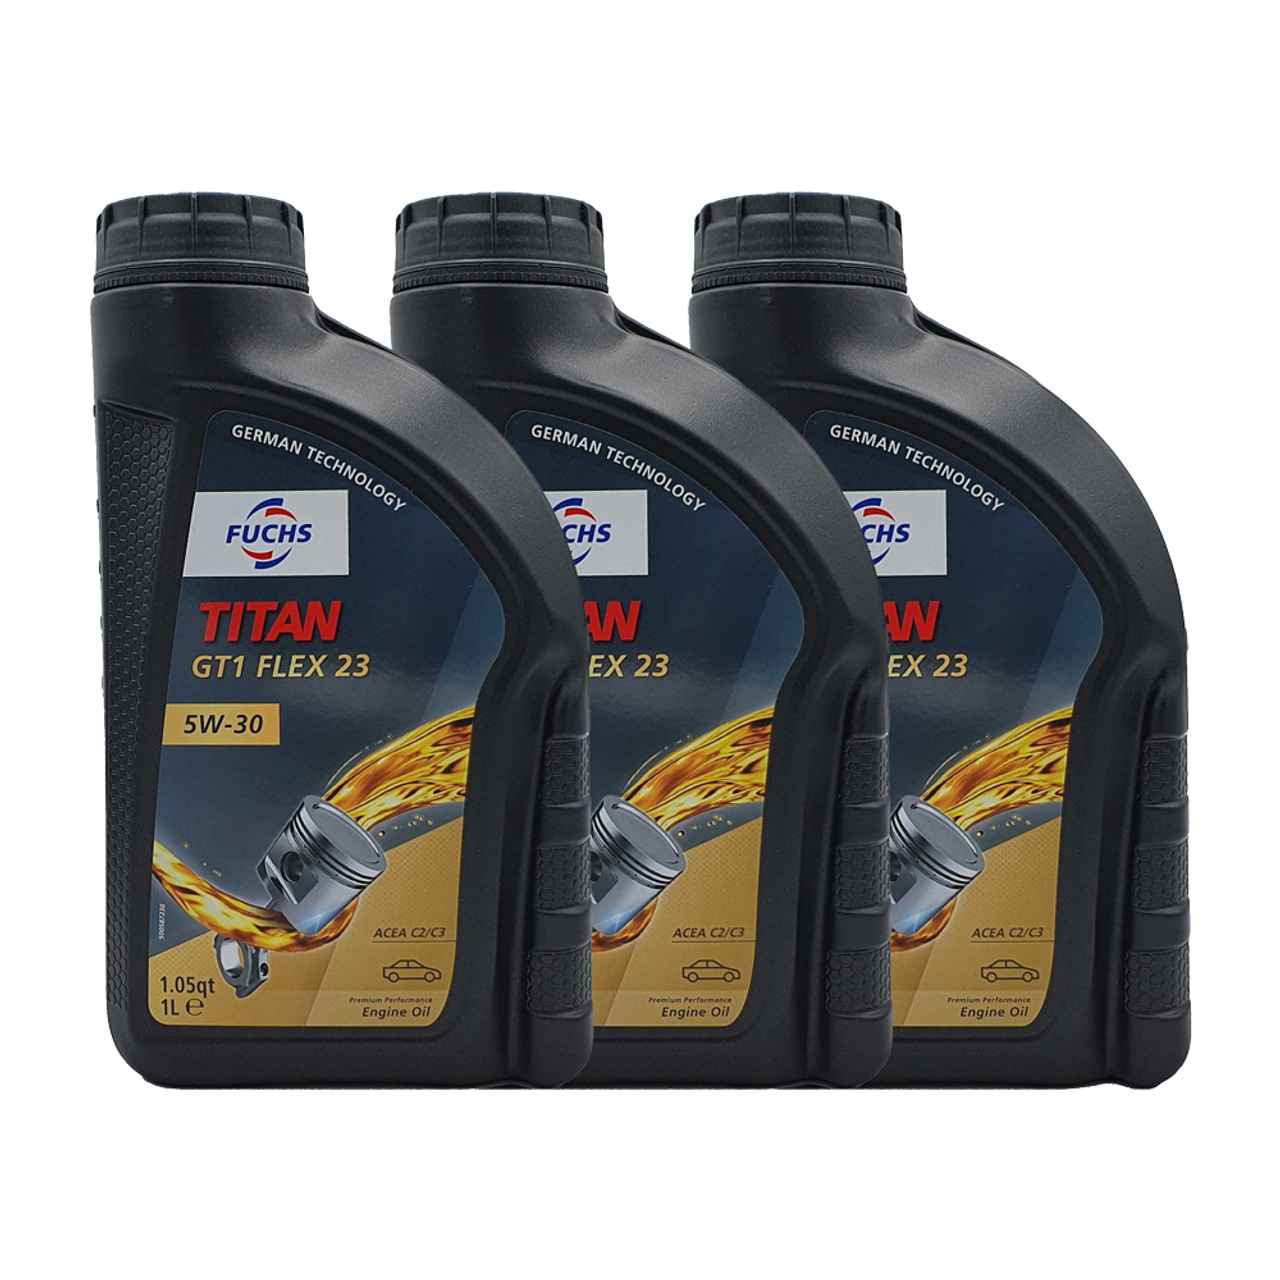 Fuchs Titan GT1 Flex C23 5W-30  3x1 Liter